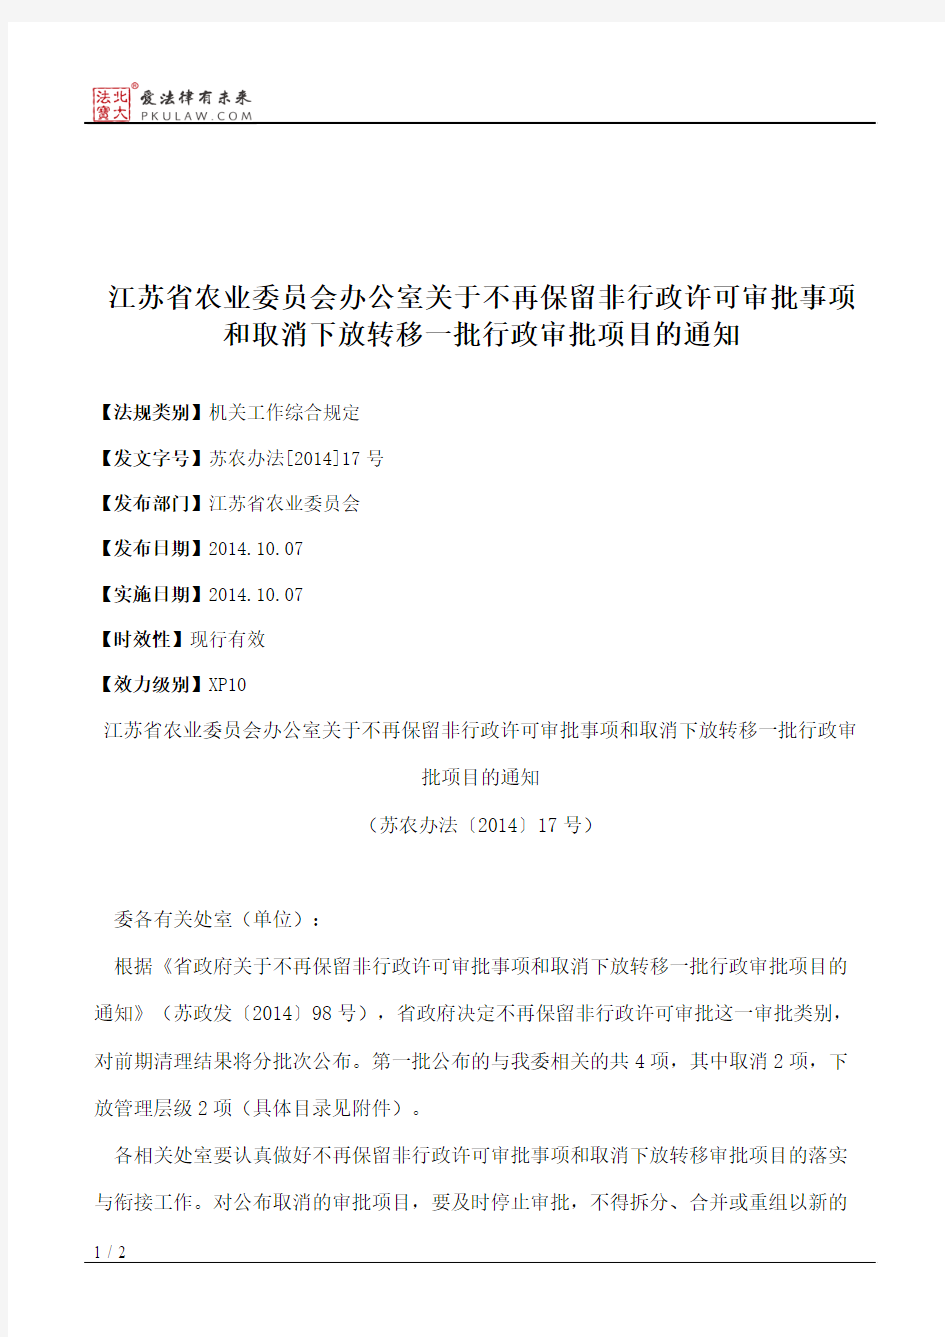 江苏省农业委员会办公室关于不再保留非行政许可审批事项和取消下